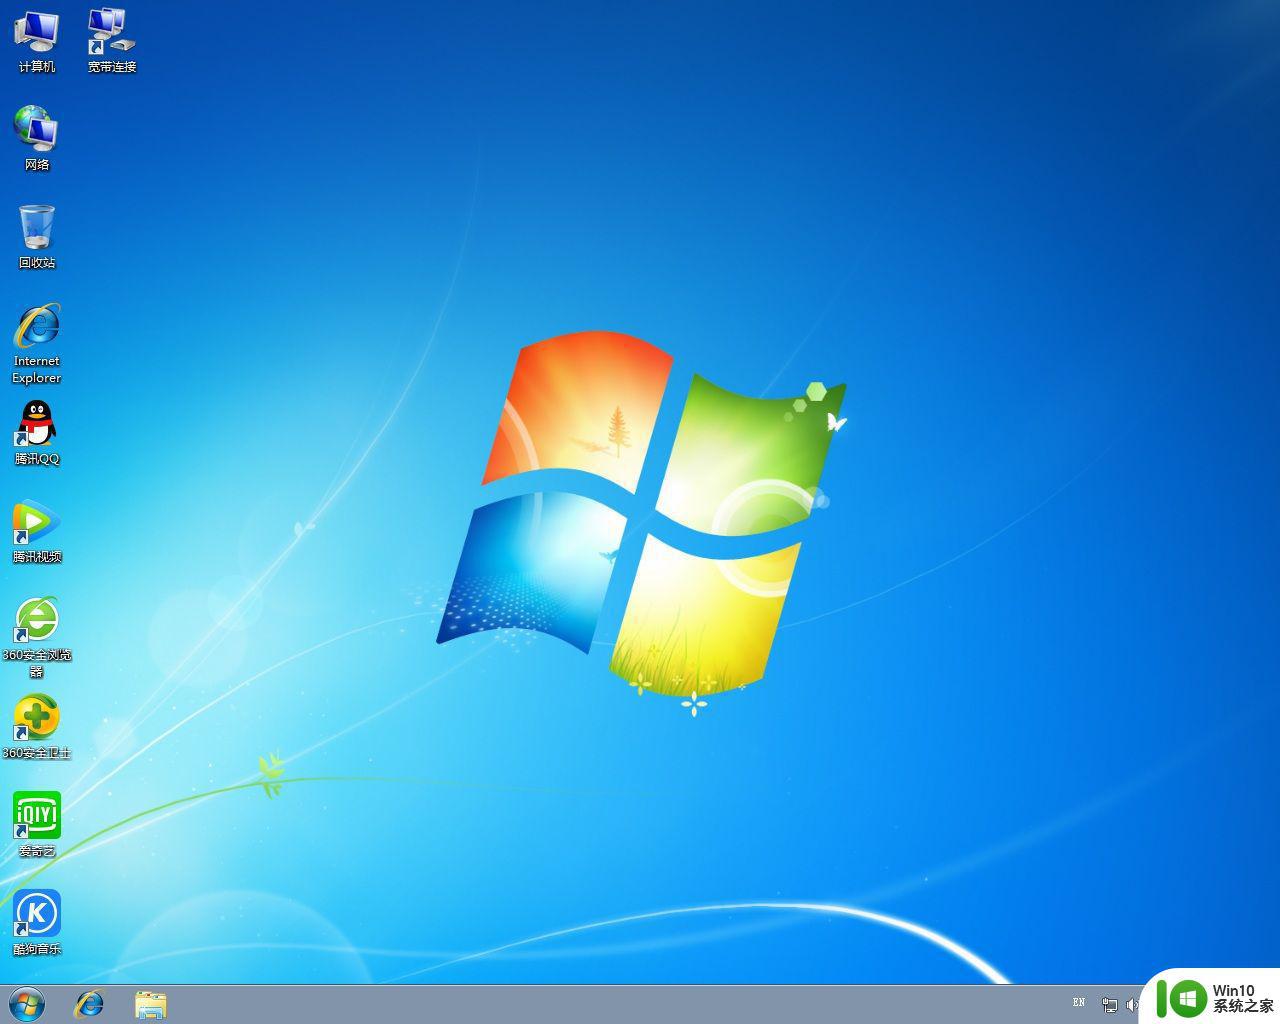 笔记本电脑固态硬盘如何安装Windows 7系统 如何在笔记本电脑固态硬盘上安装Windows 7操作系统